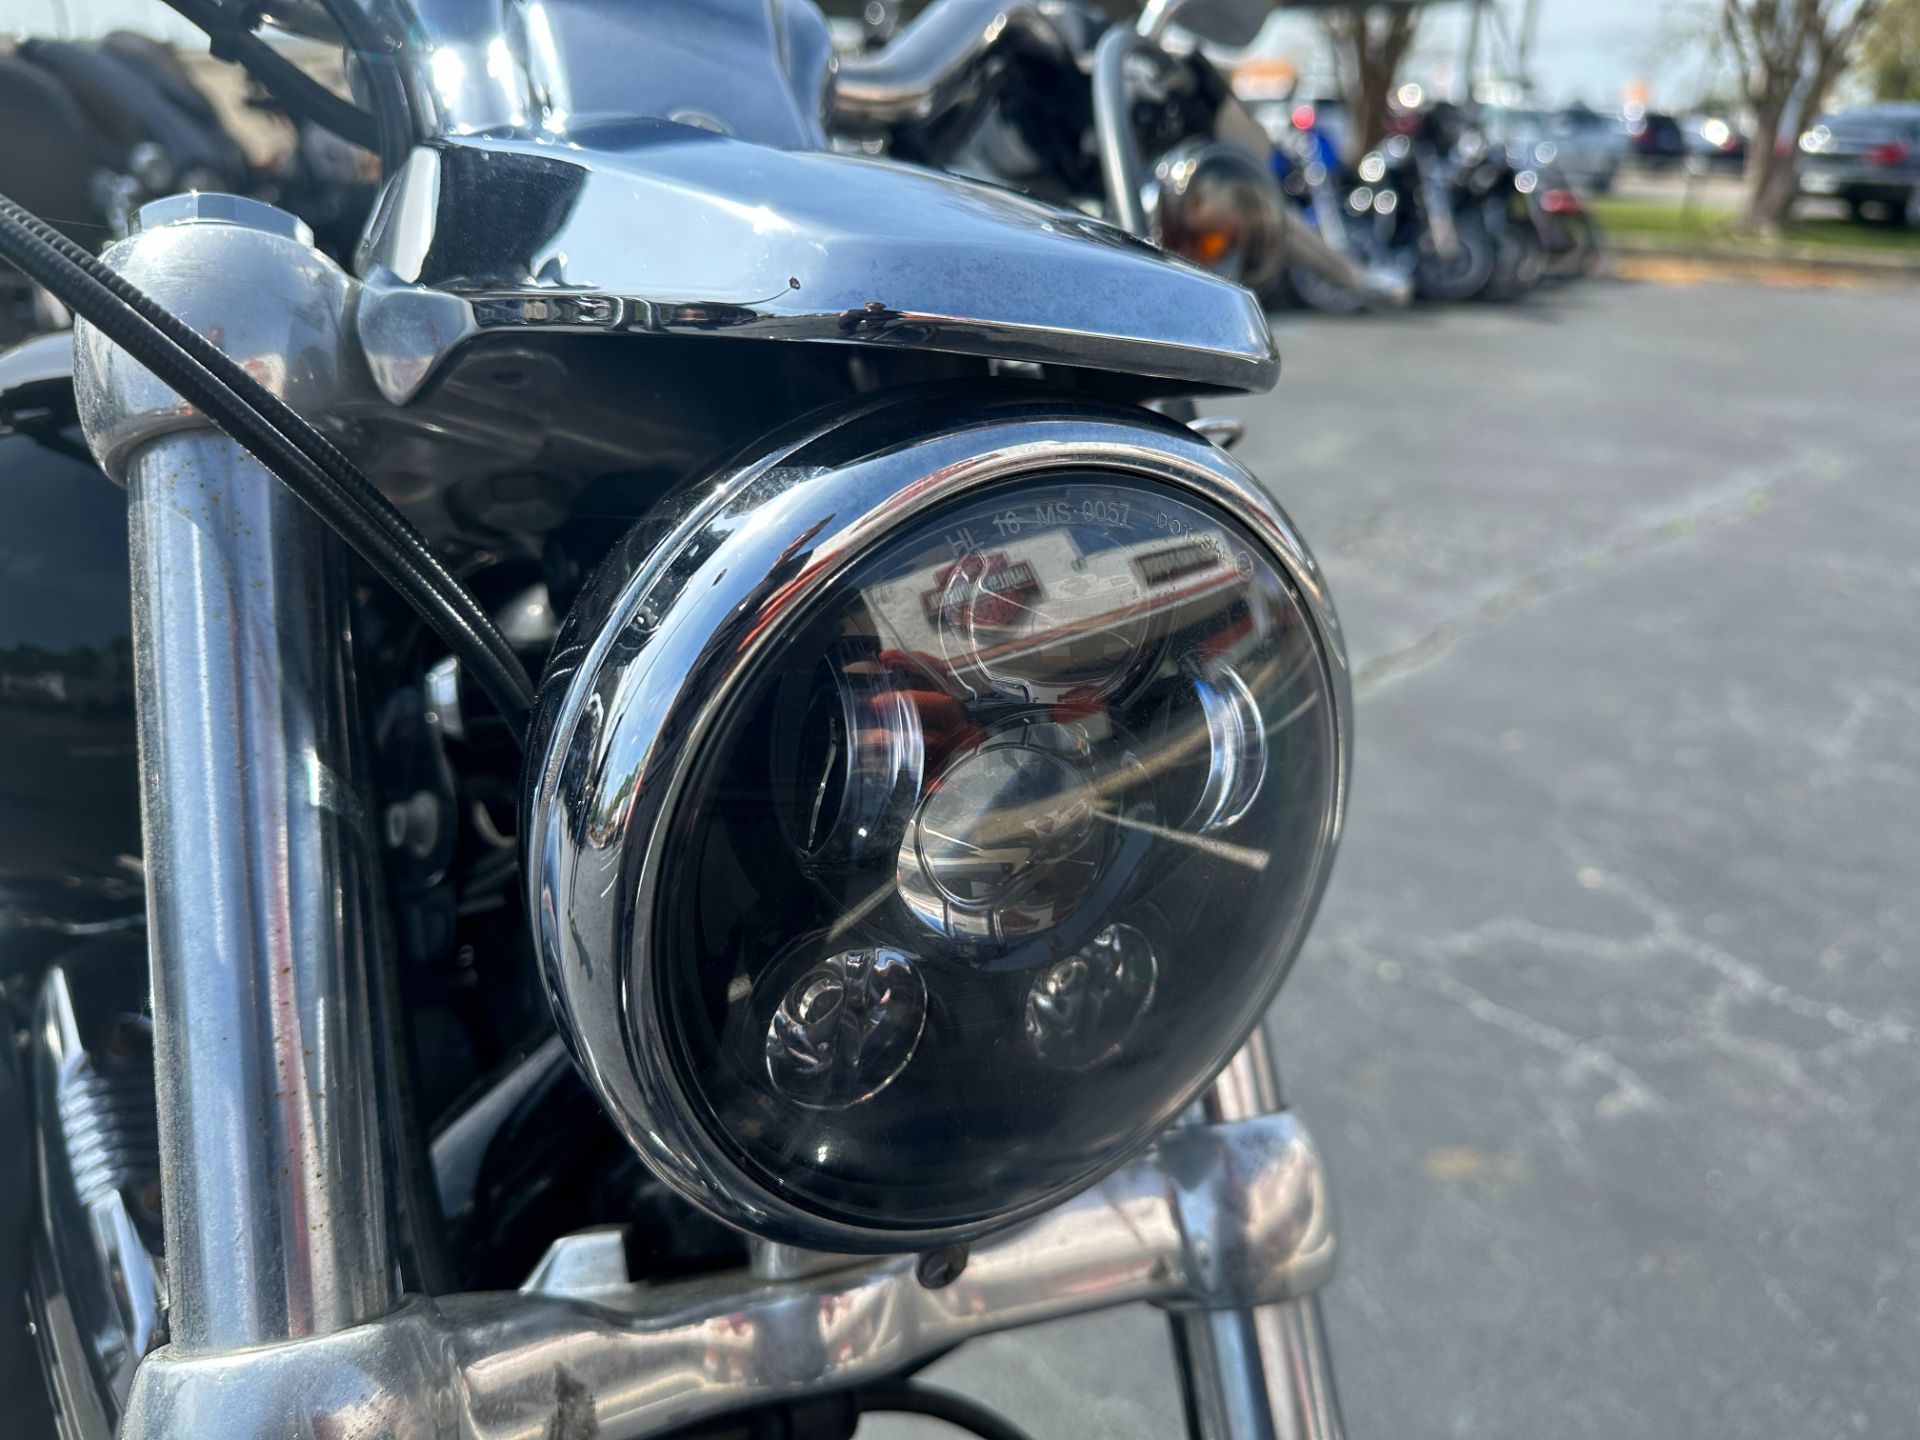 2014 Harley-Davidson 1200 Custom in Mobile, Alabama - Photo 3